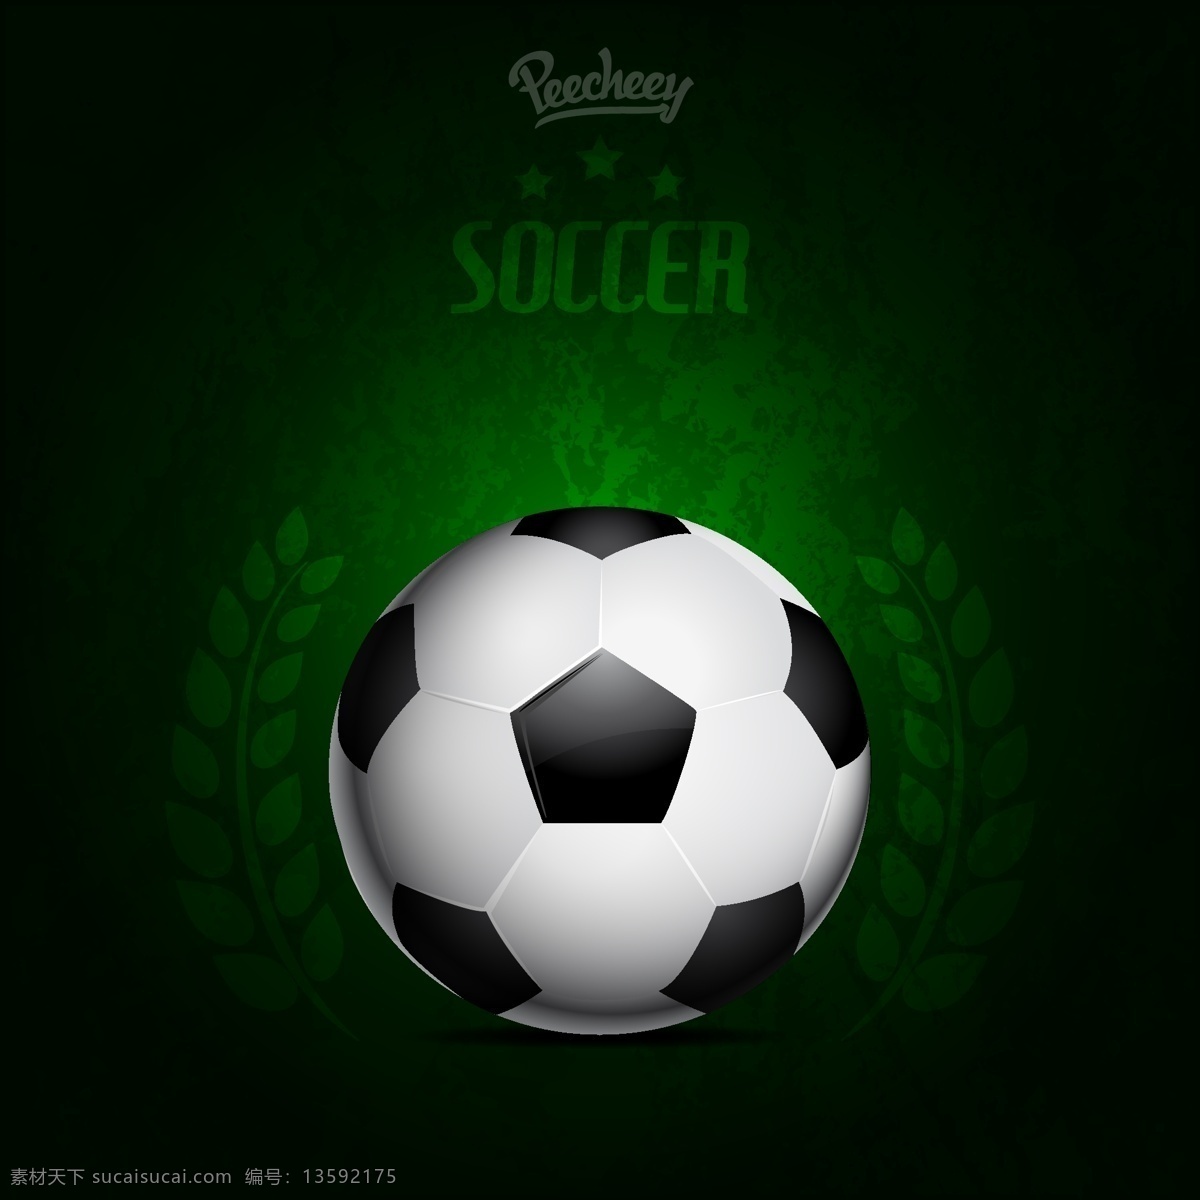 绿色 背景 蹩脚 足球 海报 背景壁纸 旗帜和徽章 设计元素 垃圾 体育 模板和模型